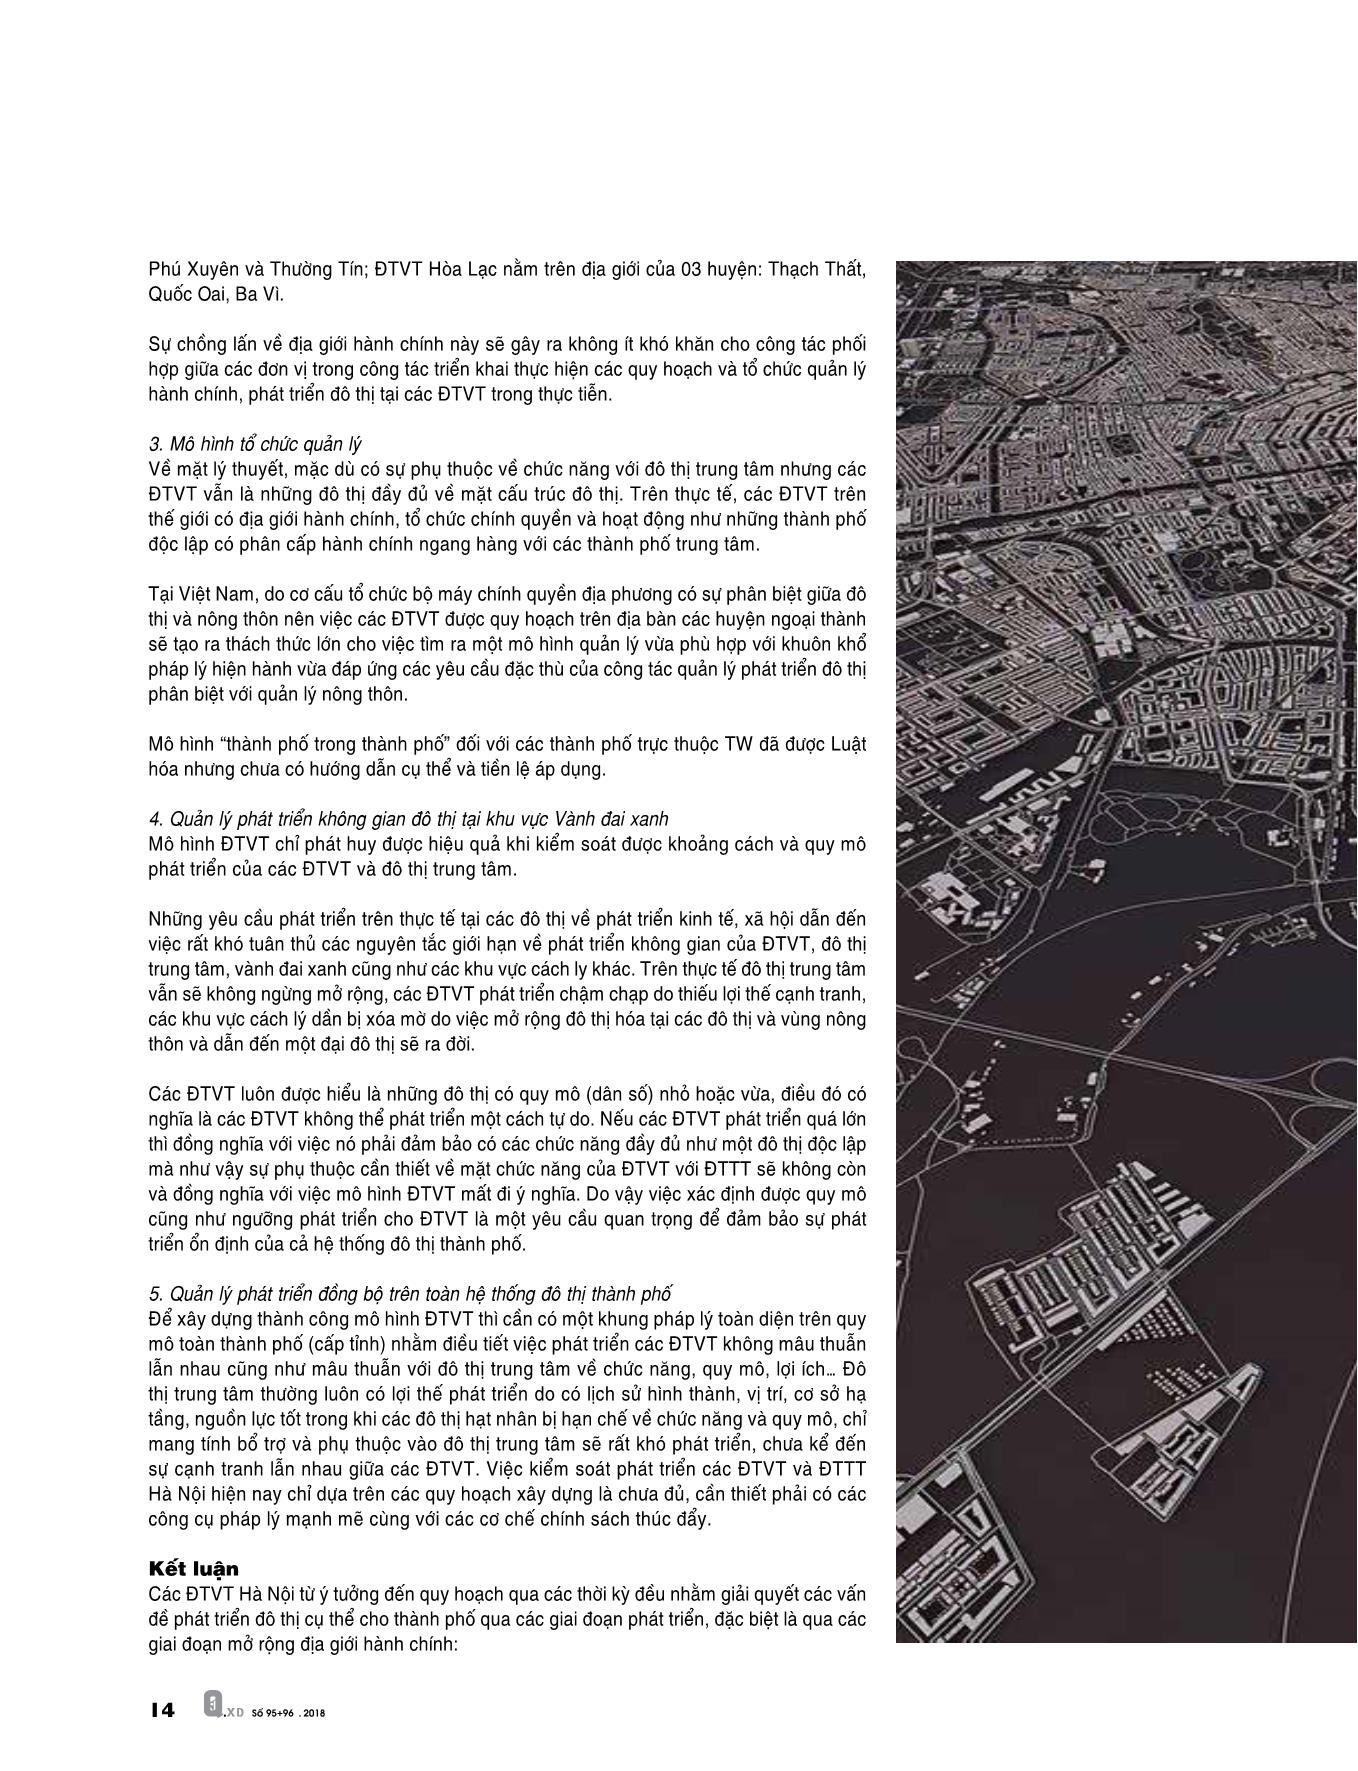 Tổng quan về mô hình quy hoạch đô thị vệ tinh trang 8